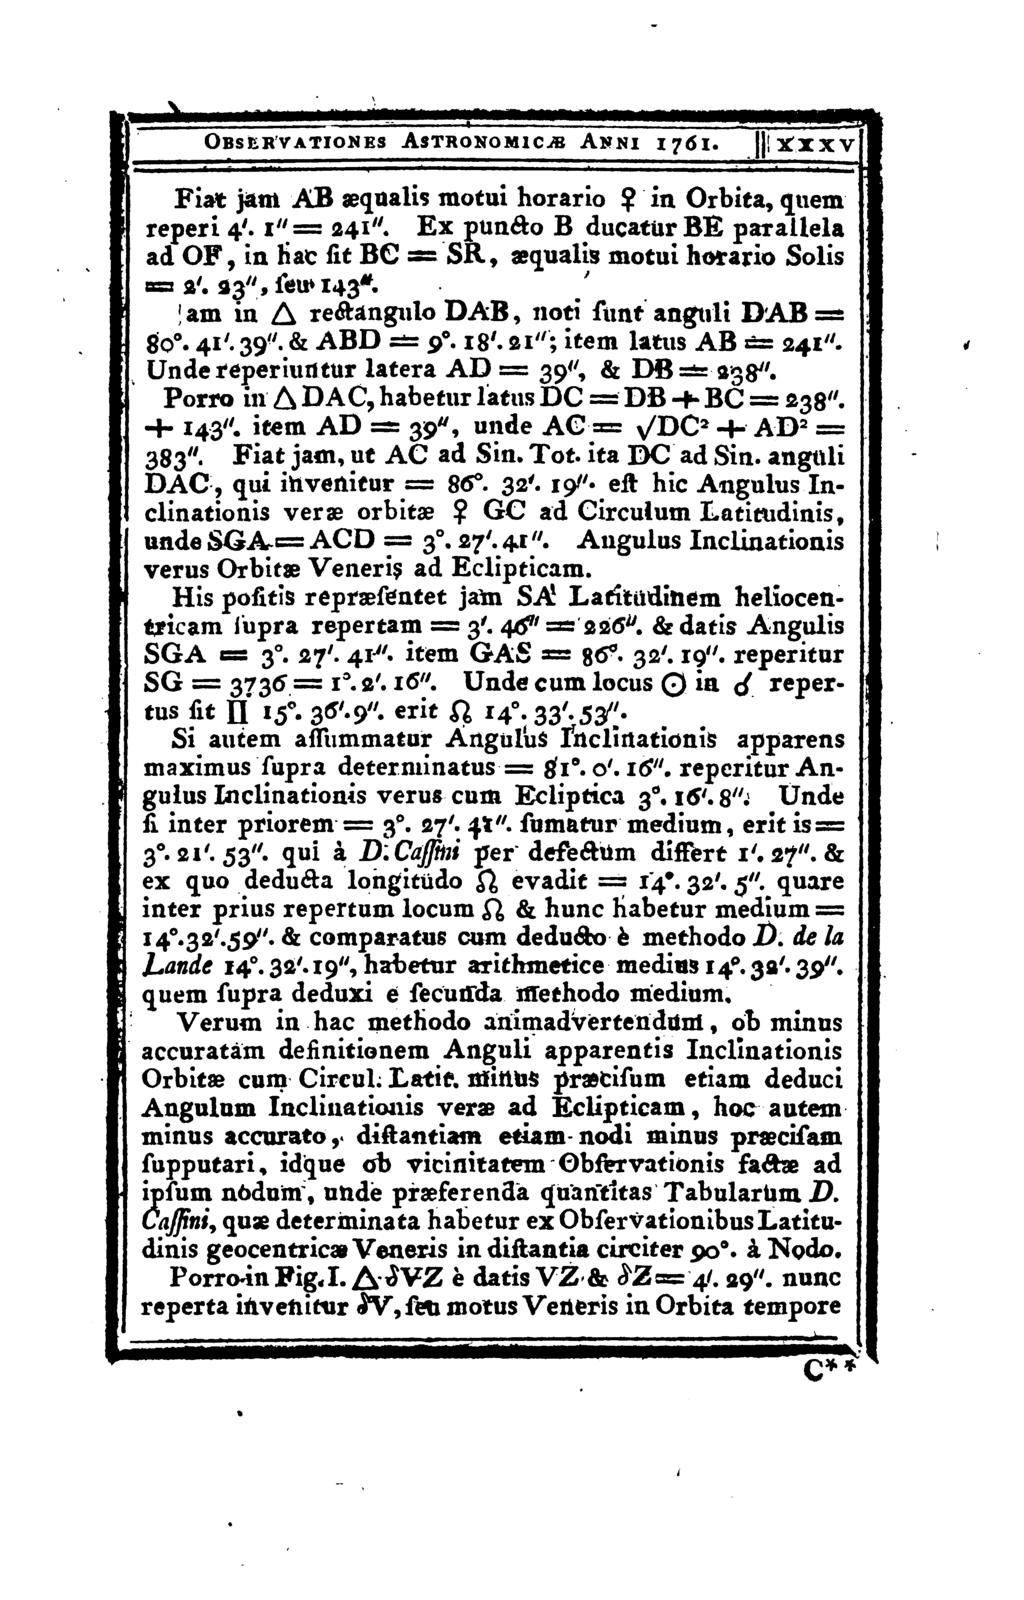 OBSER VATIONES AsTRONOMlCiB AnNI 1761. XXXV Fiat jam AB sequalis motui horario? in Orbita, quem reperi 4'. 1"= 241".